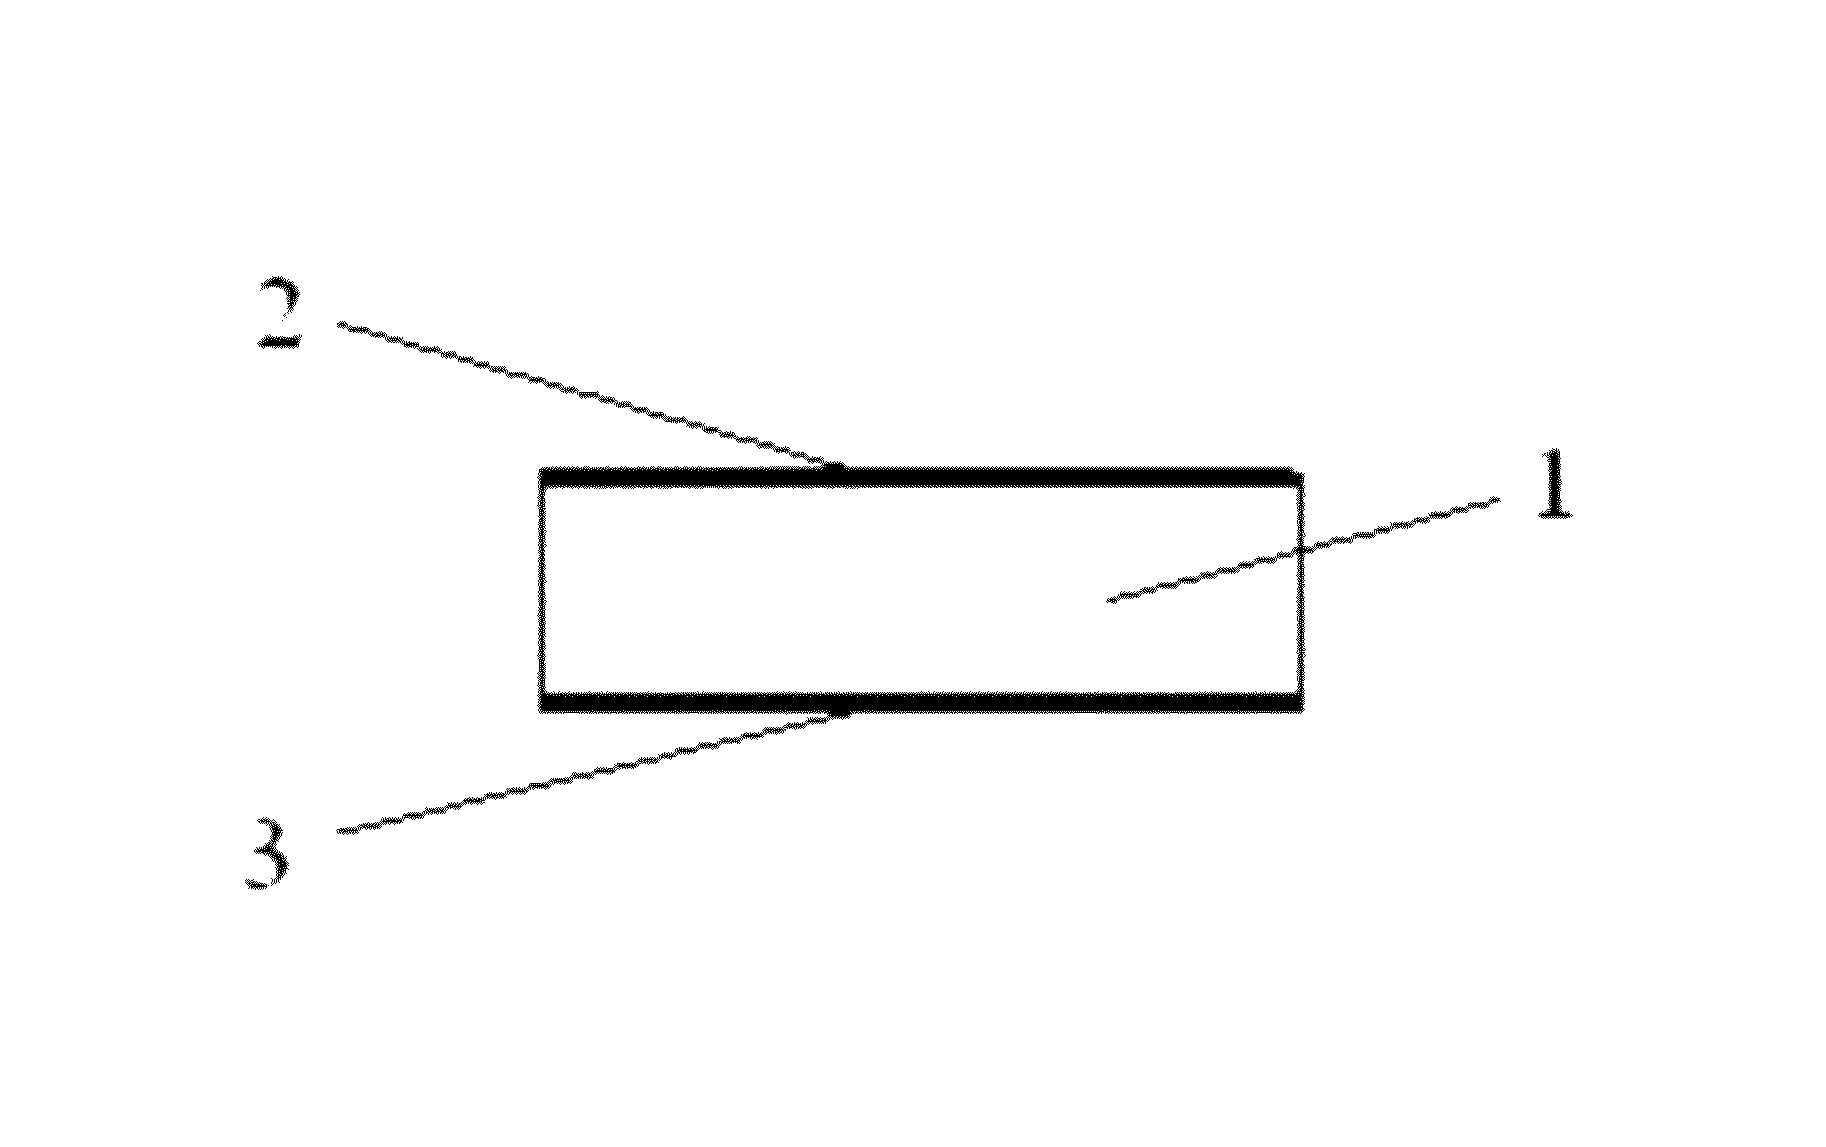 Superlattice crystal resonator and its usage as superlattice crystal filter